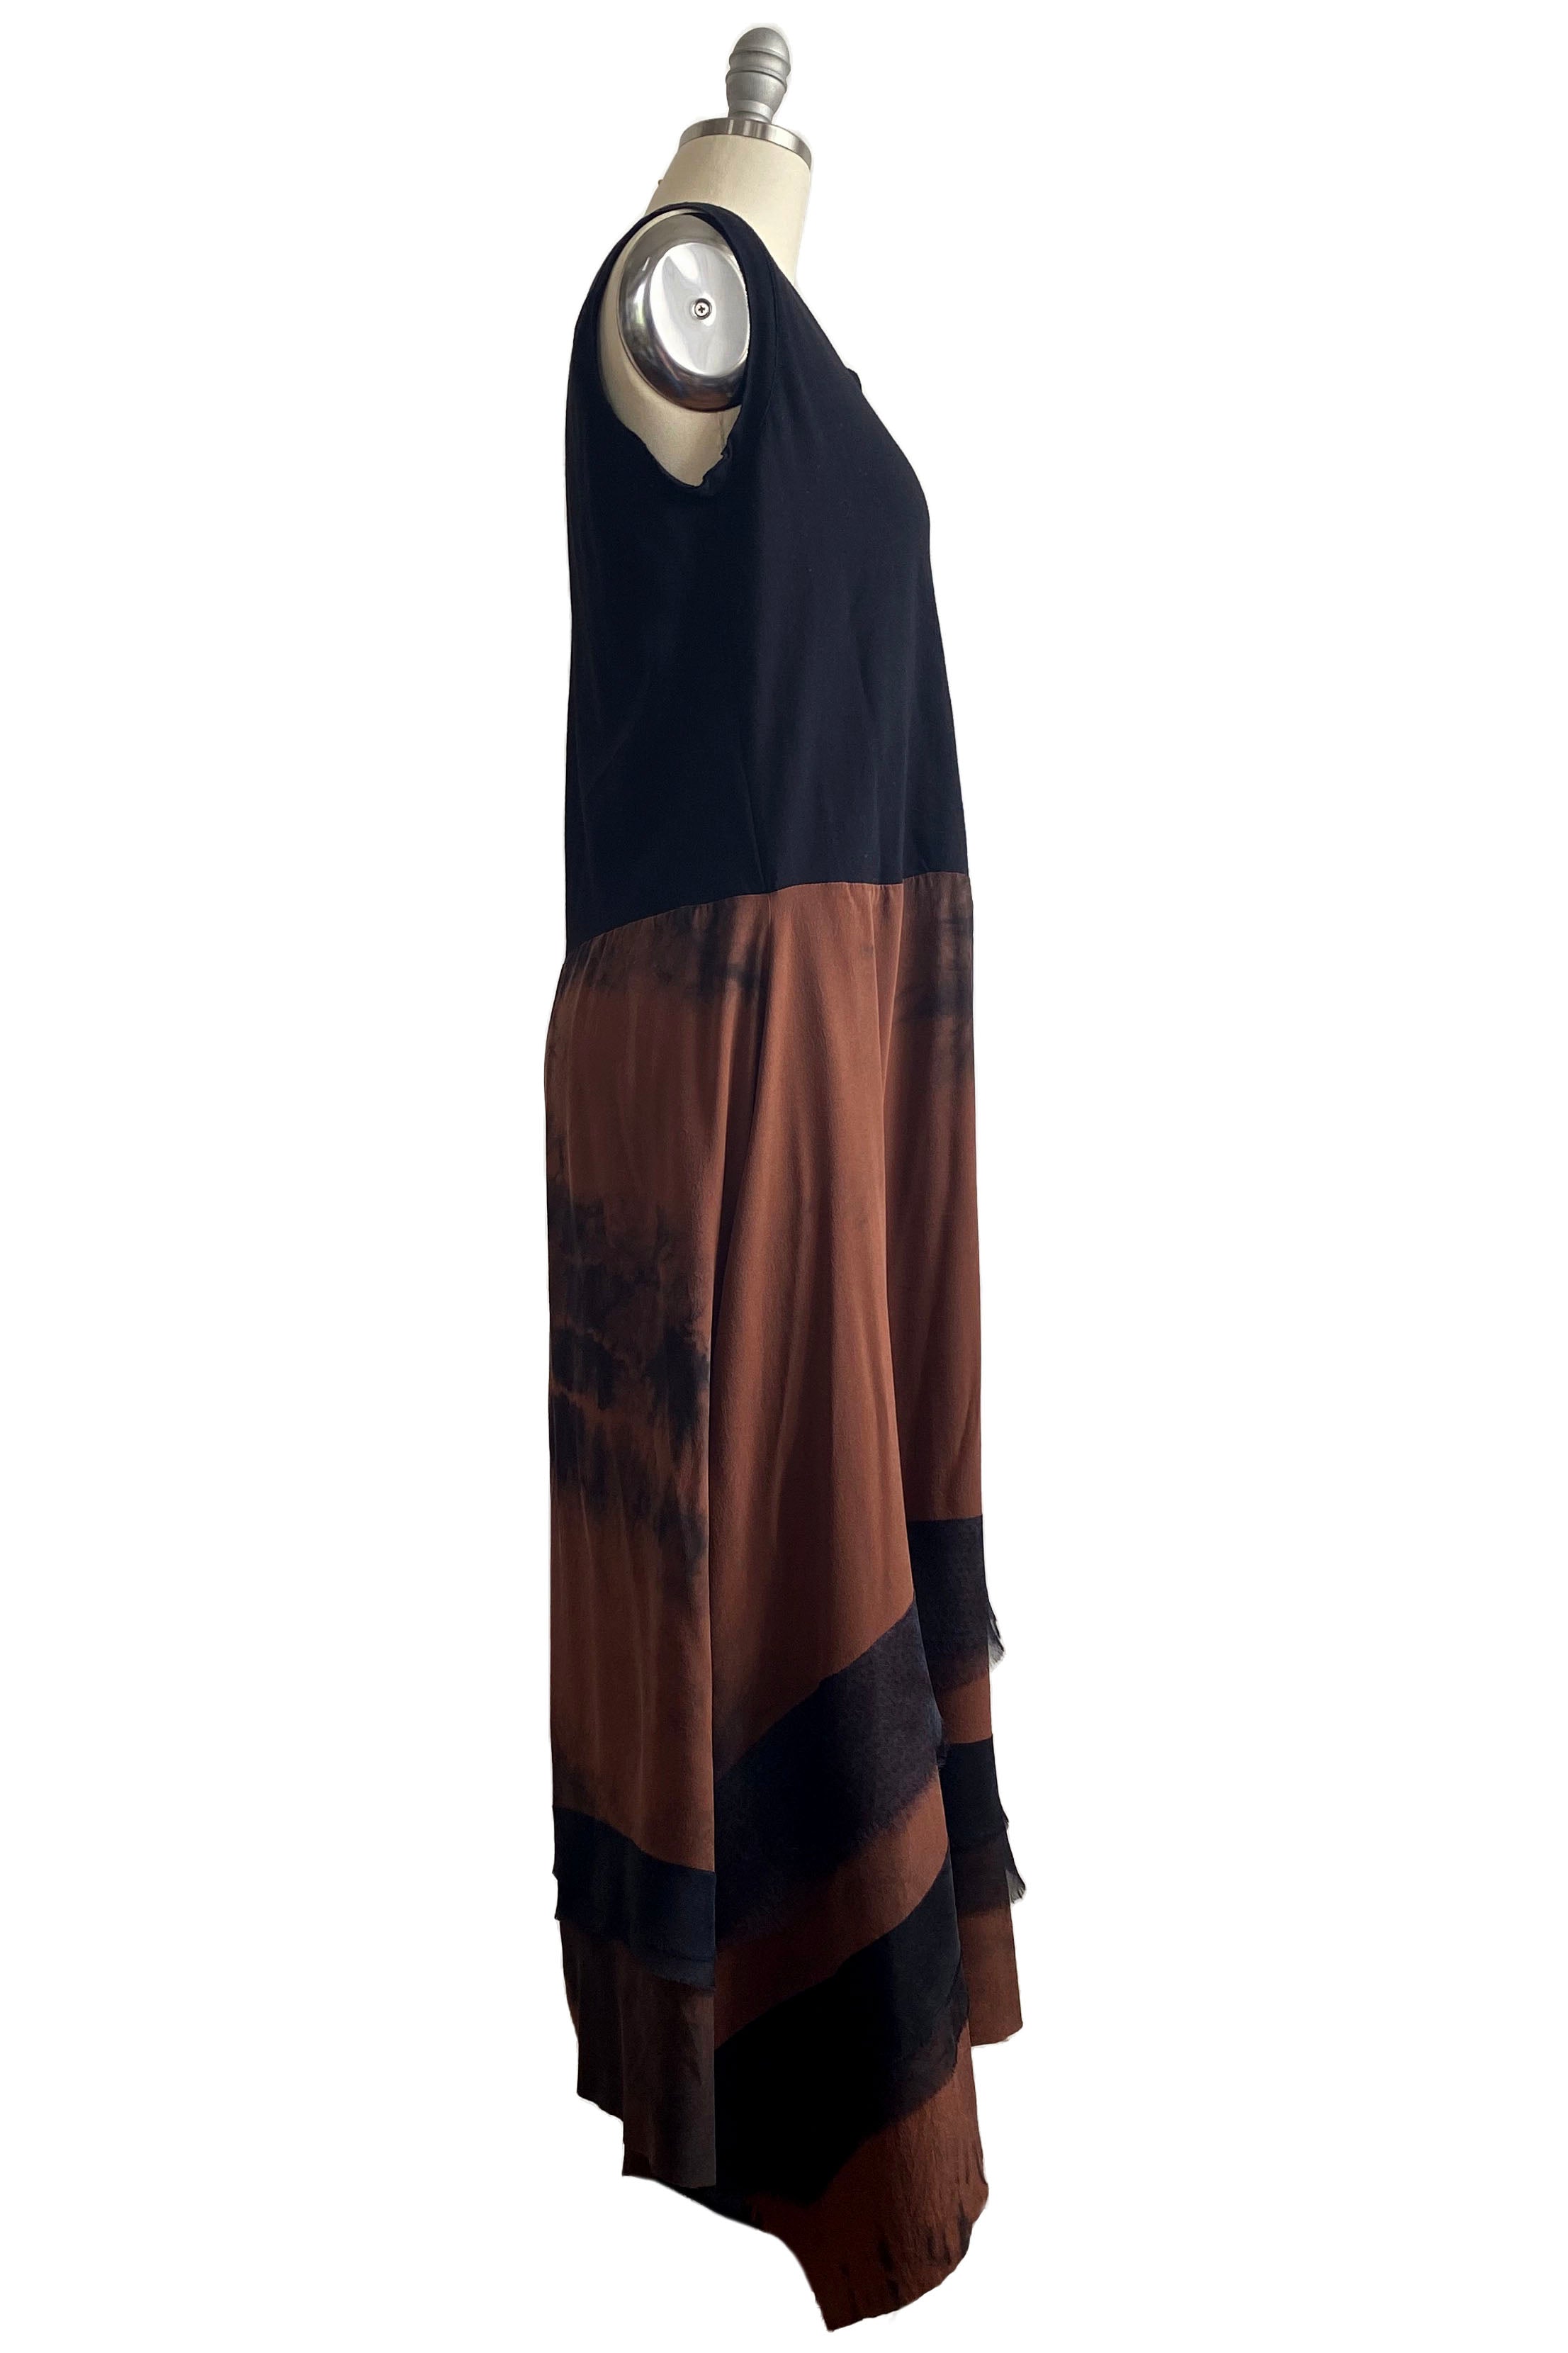 Montmartre Dress w/ Jersey Top Chestnut Tie Dye - M/L